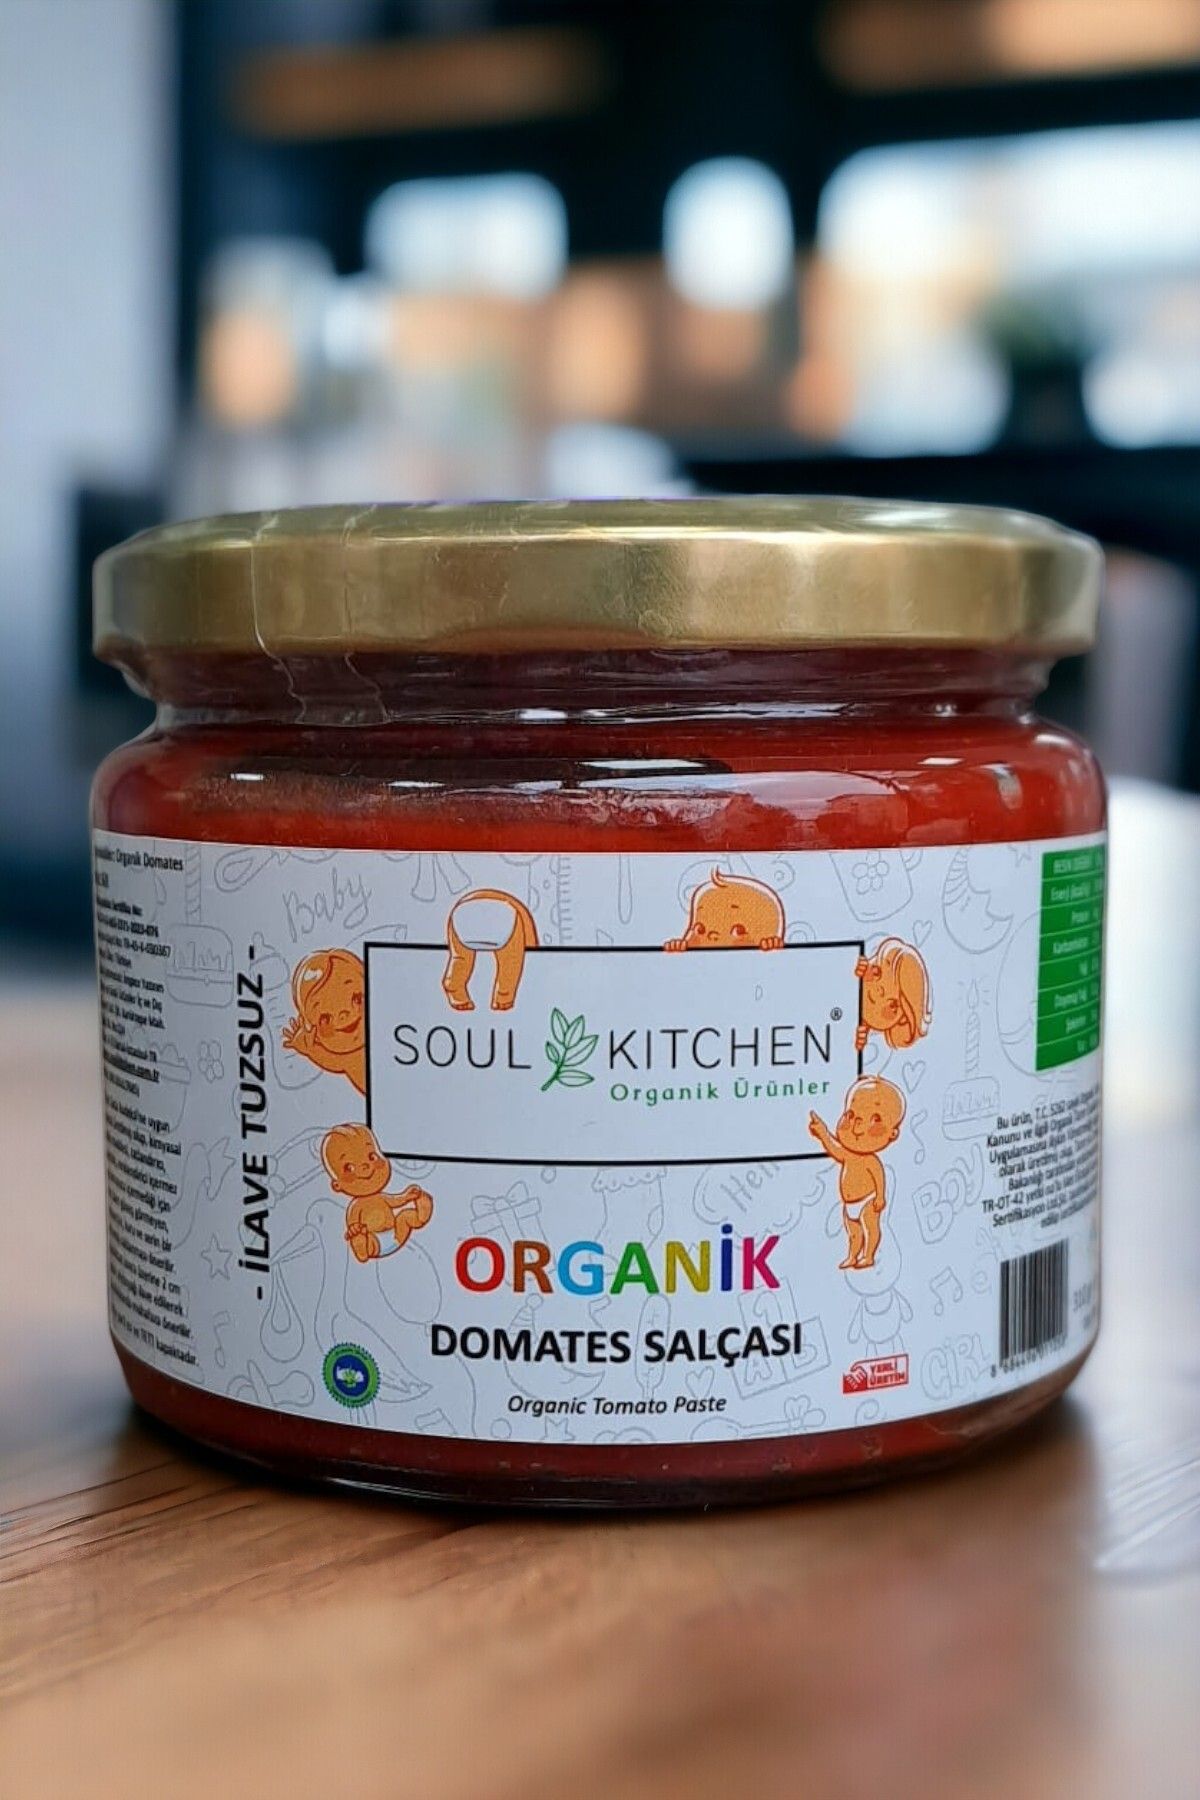 Soul Kitchen Organik Ürünler Organik Bebek Domates Salçası 310gr (İLAVE TUZSUZ)